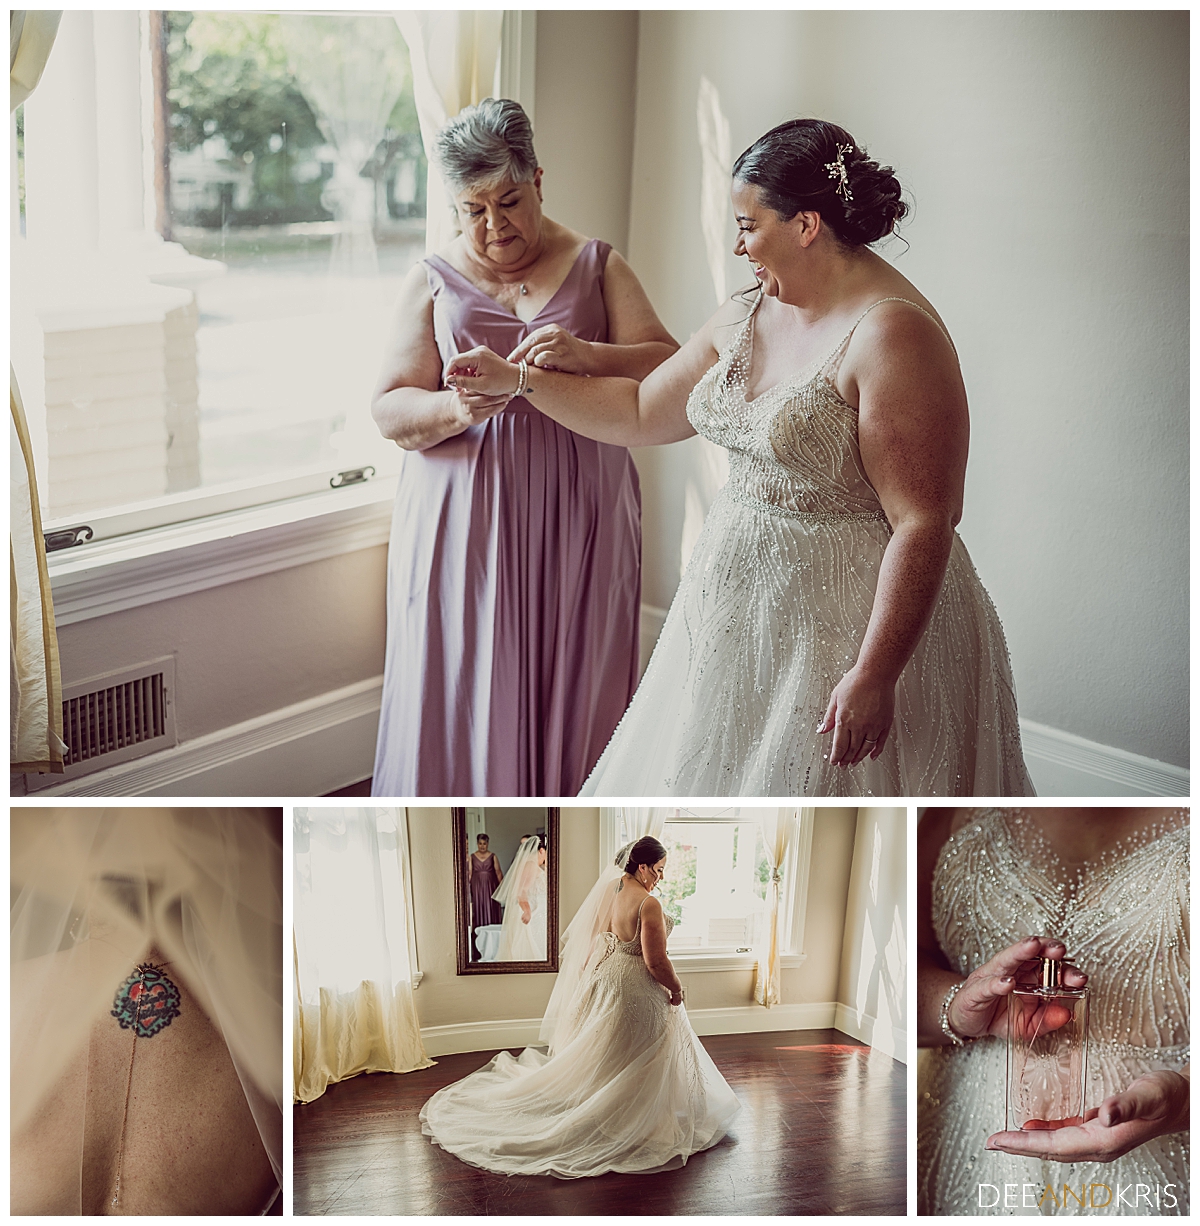 Five images of bridal details; bracelet, back necklace, dress, and perfume.